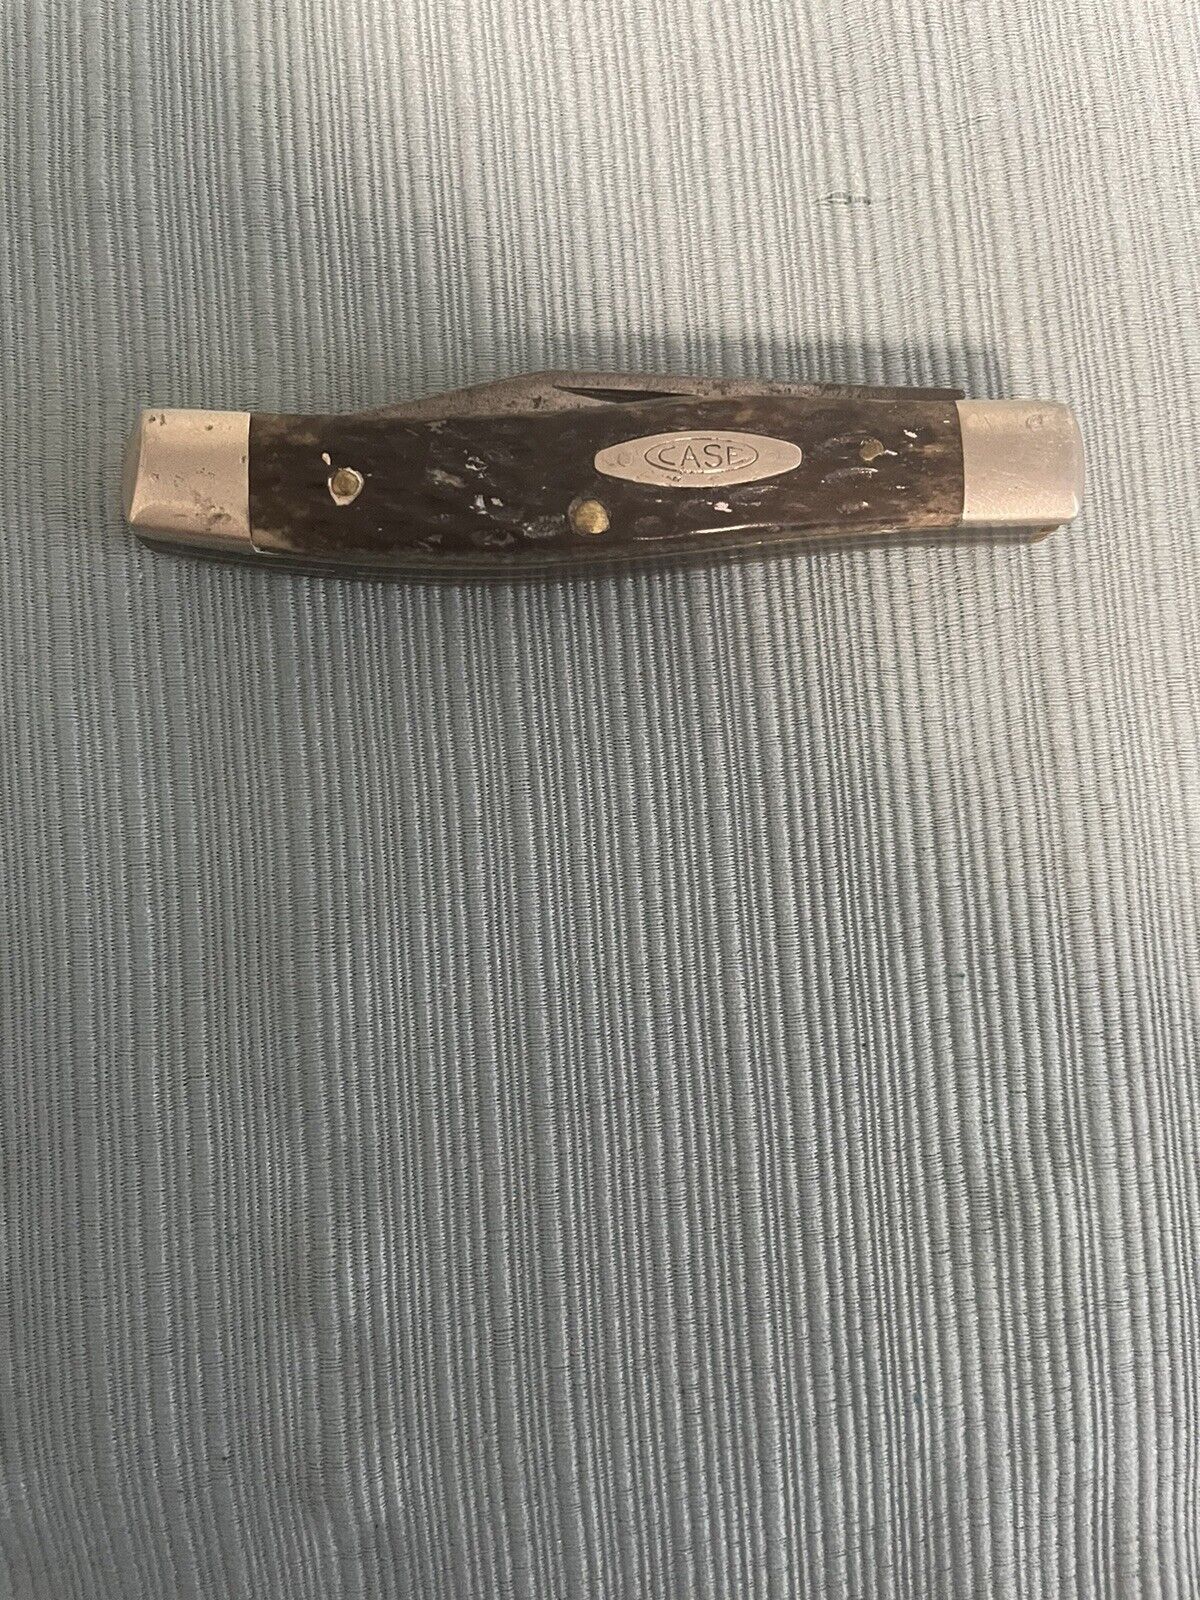 Case  2 Blade Pocket Knife 1965-1969